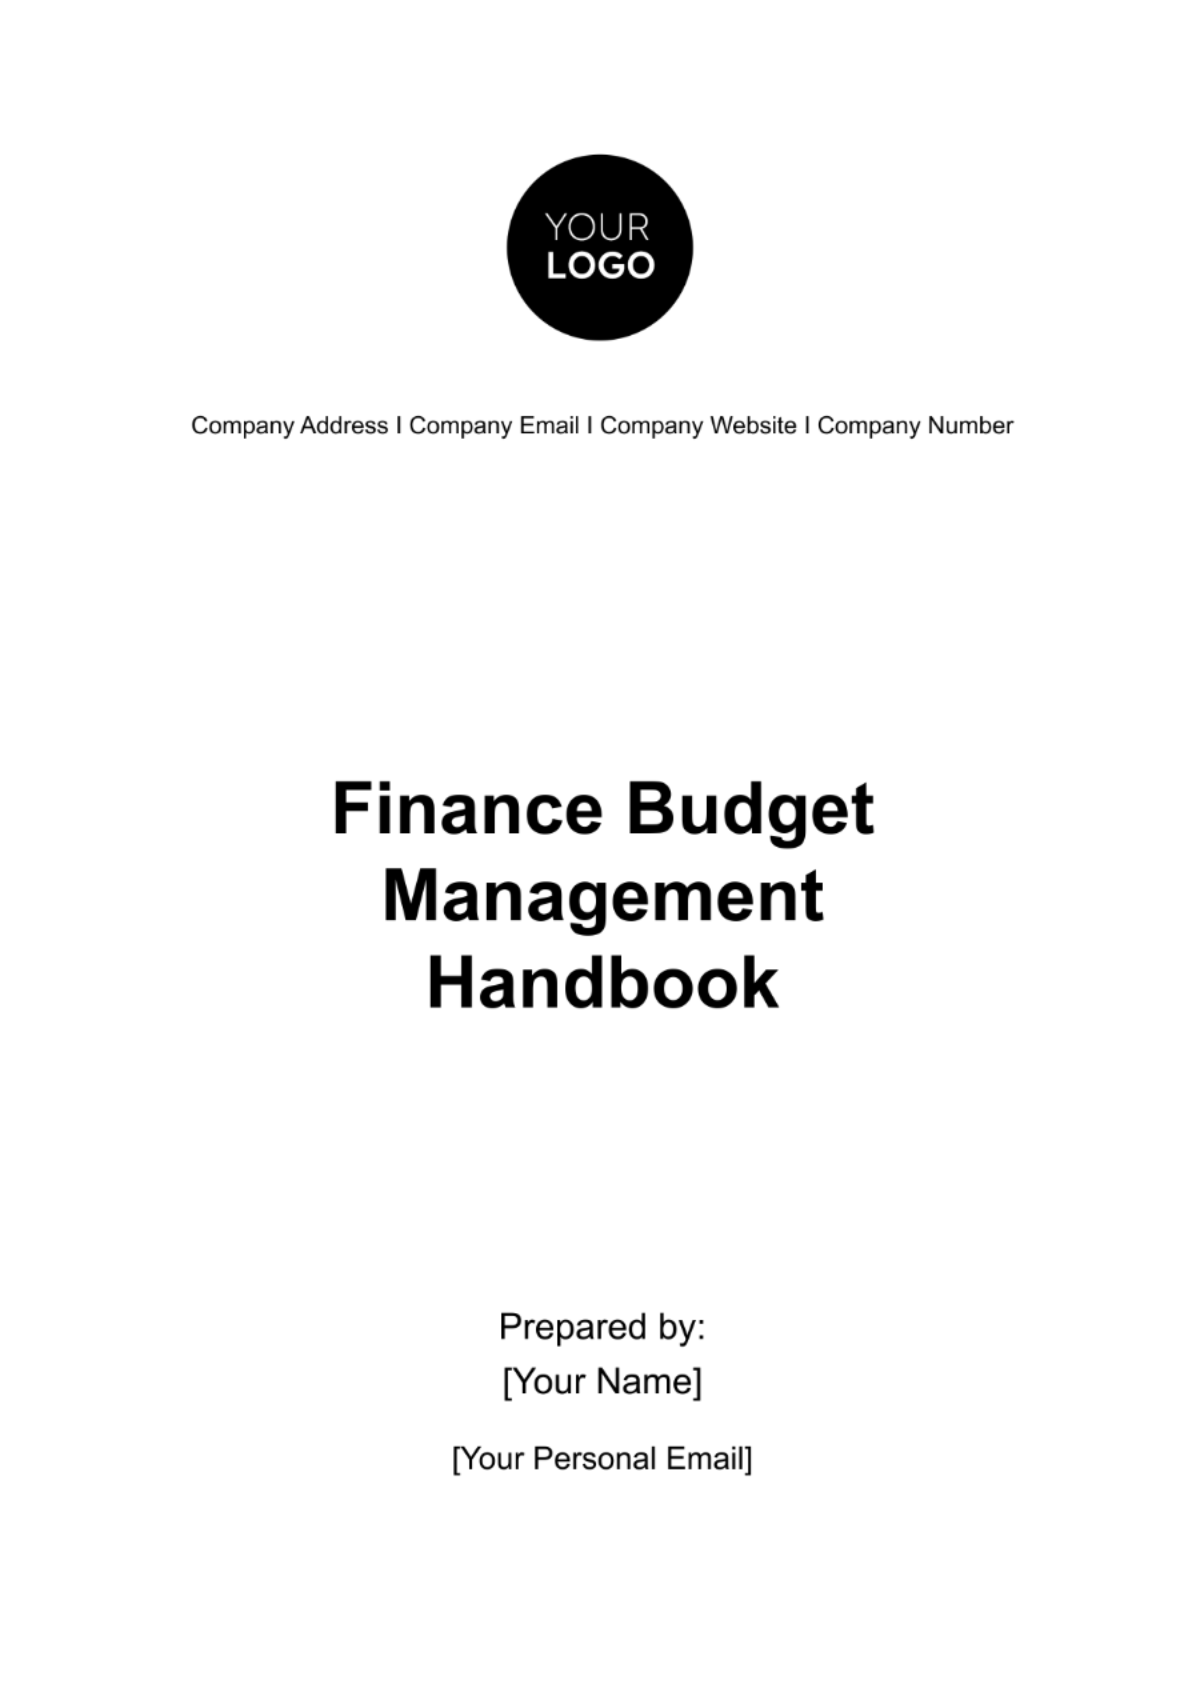 Finance Budget Management Handbook Template